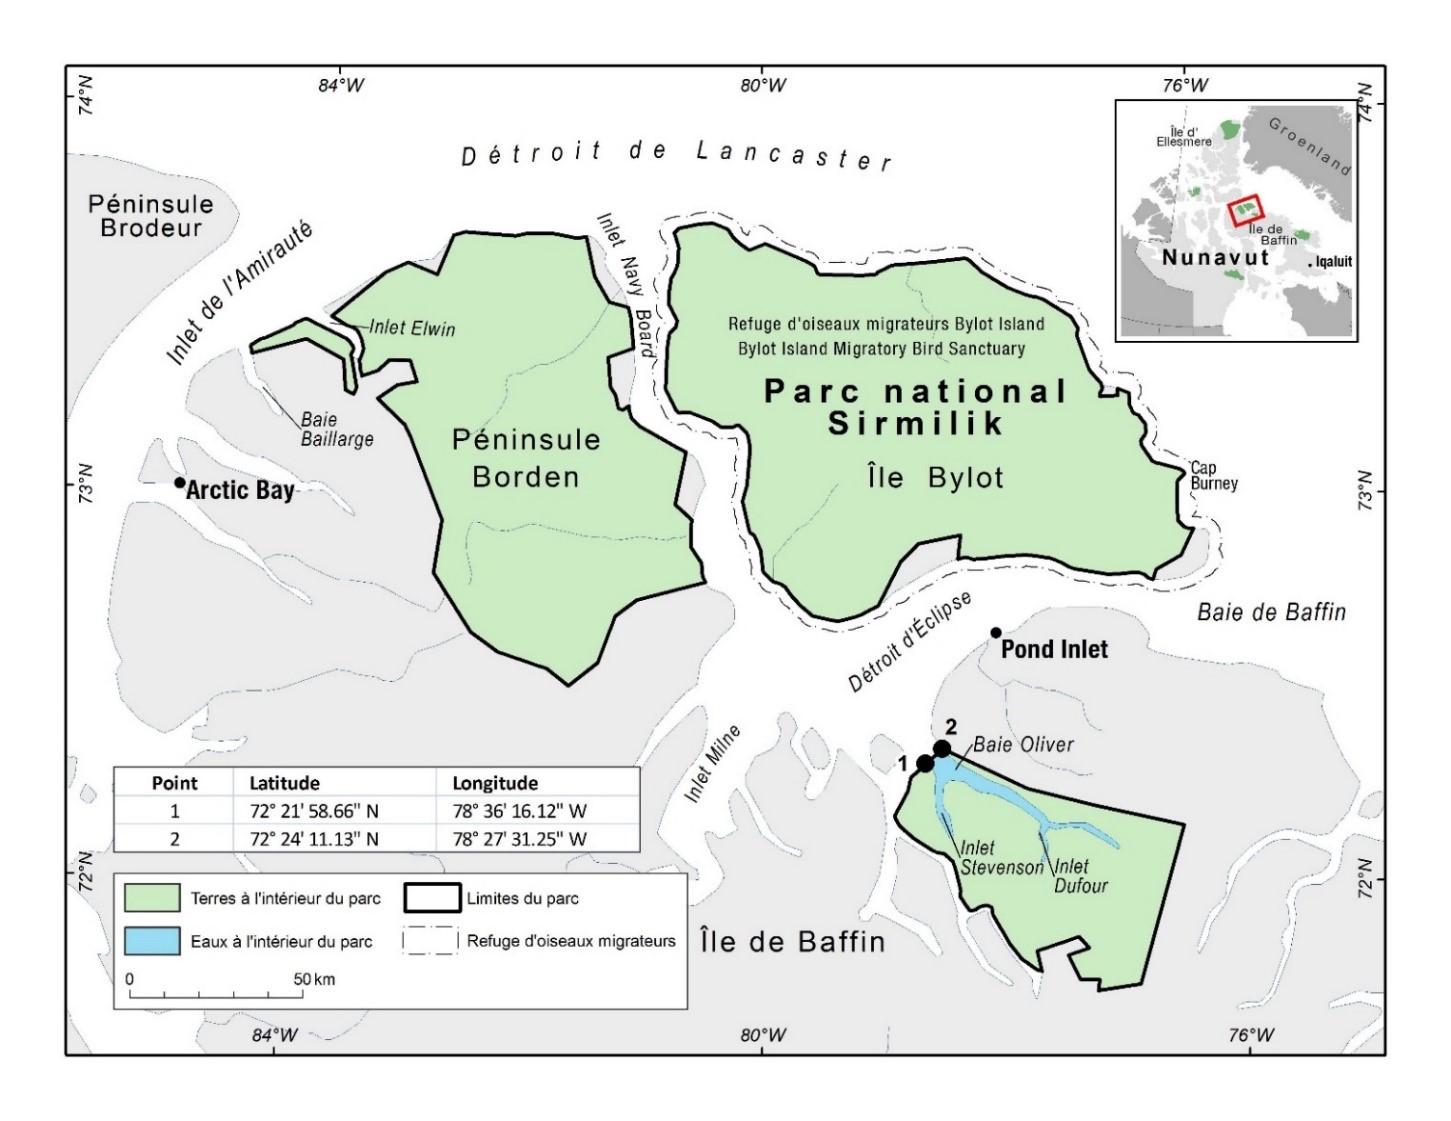 Carte du parc national du Canada Sirmilik avec des points
                 de coordonnées pour indiquer ses limites lorsqu'on y accède 
                 par l'eau.